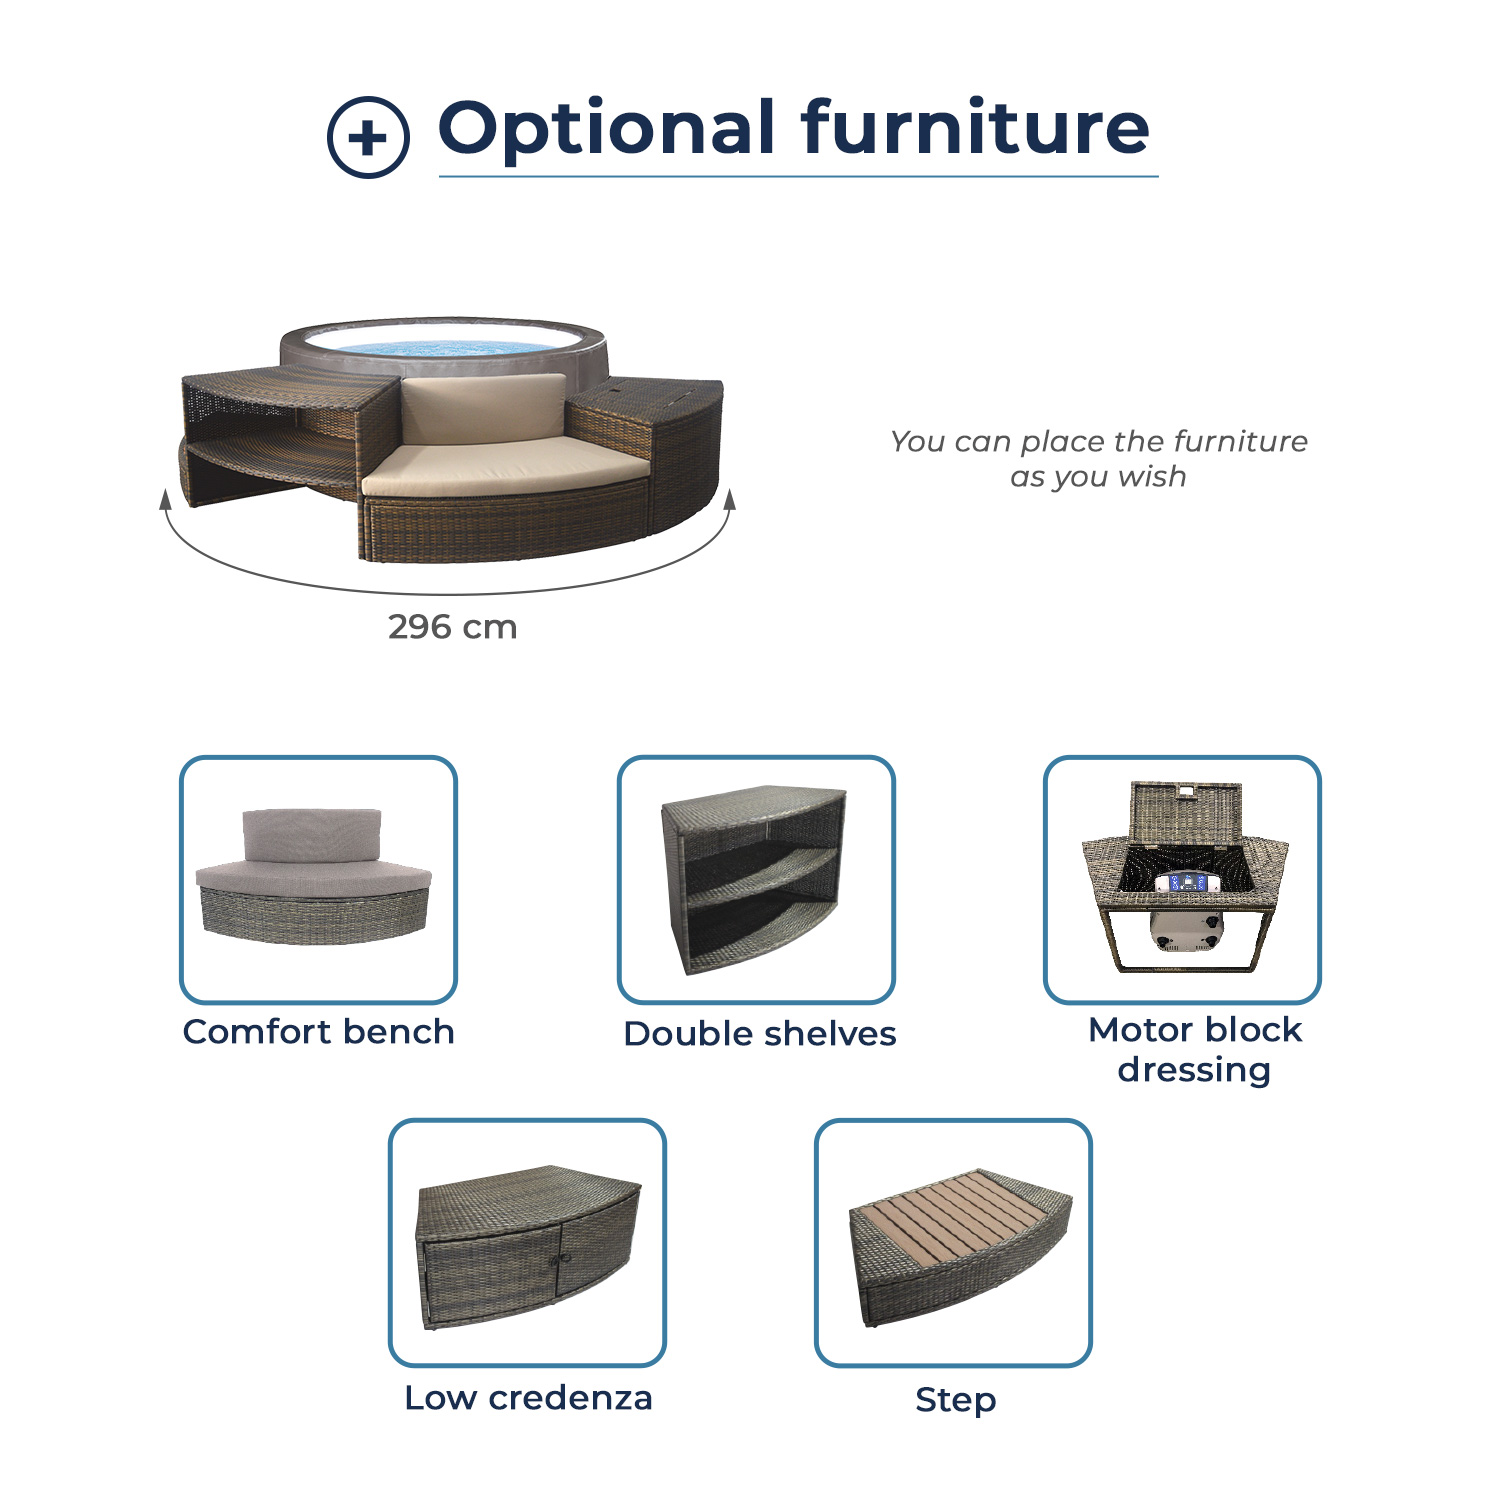 Netspa semi-rigid hot tub Vita Premium furniture